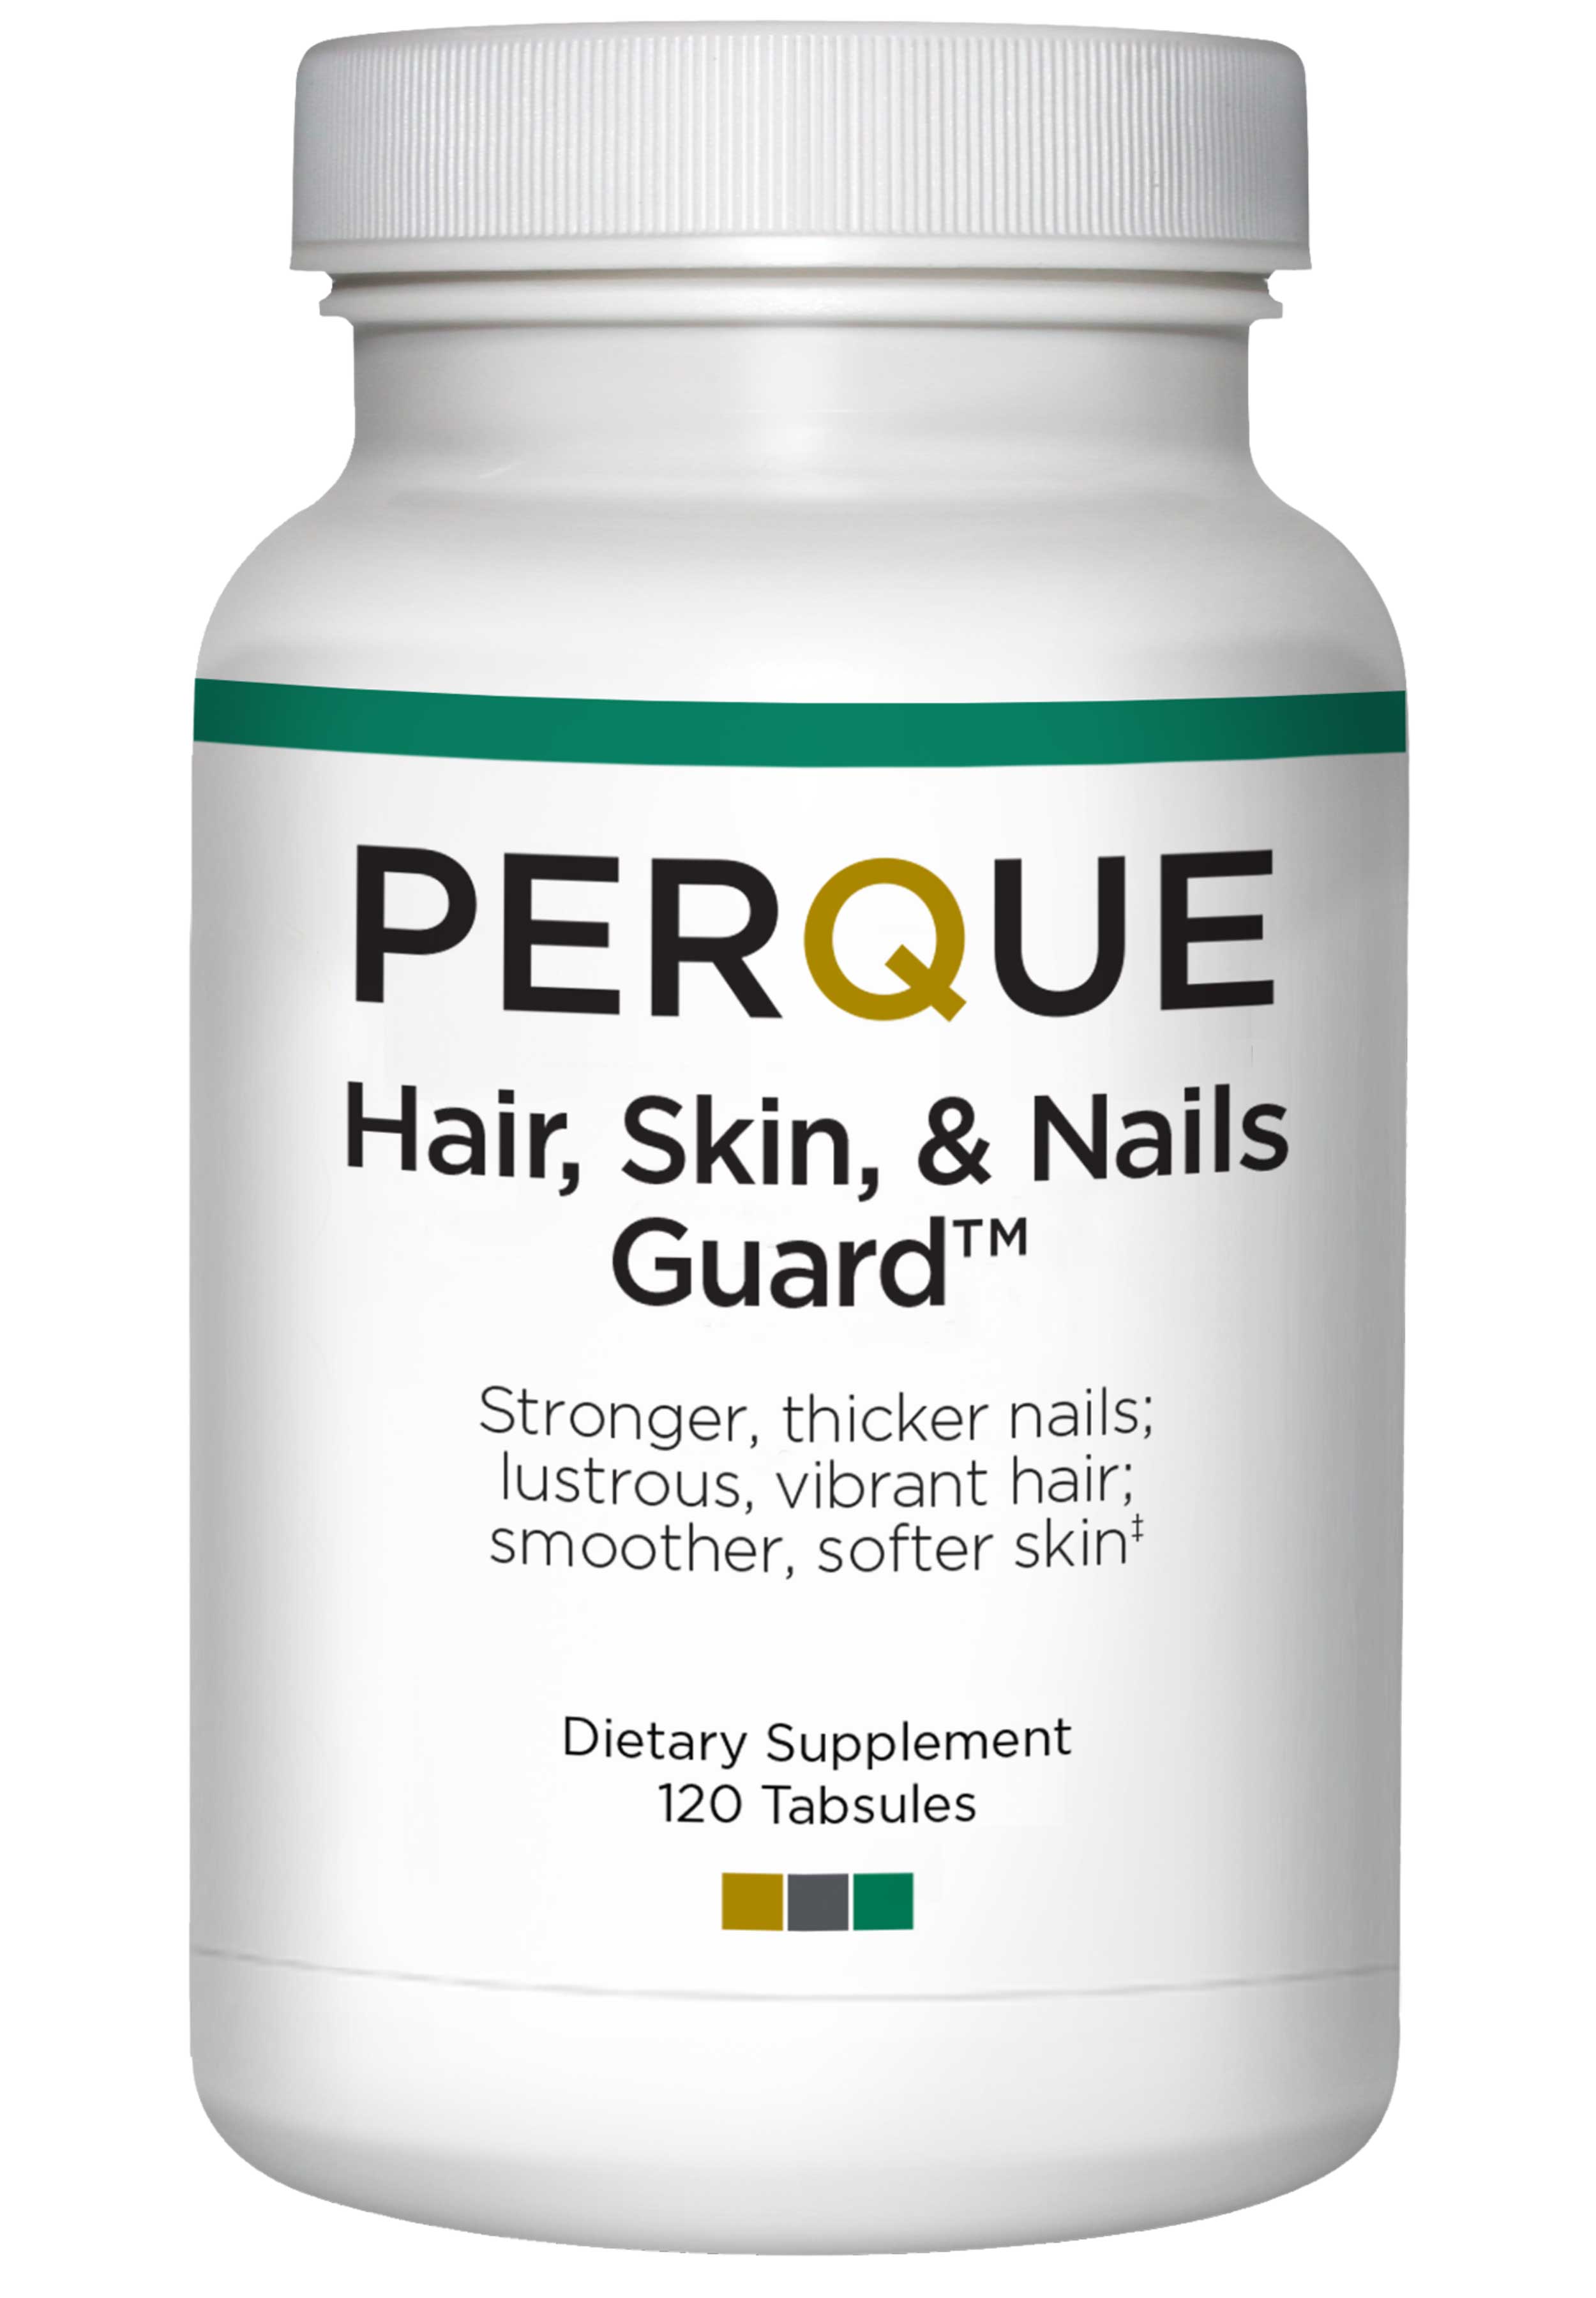 Perque Hair, Skin & Nails Guard